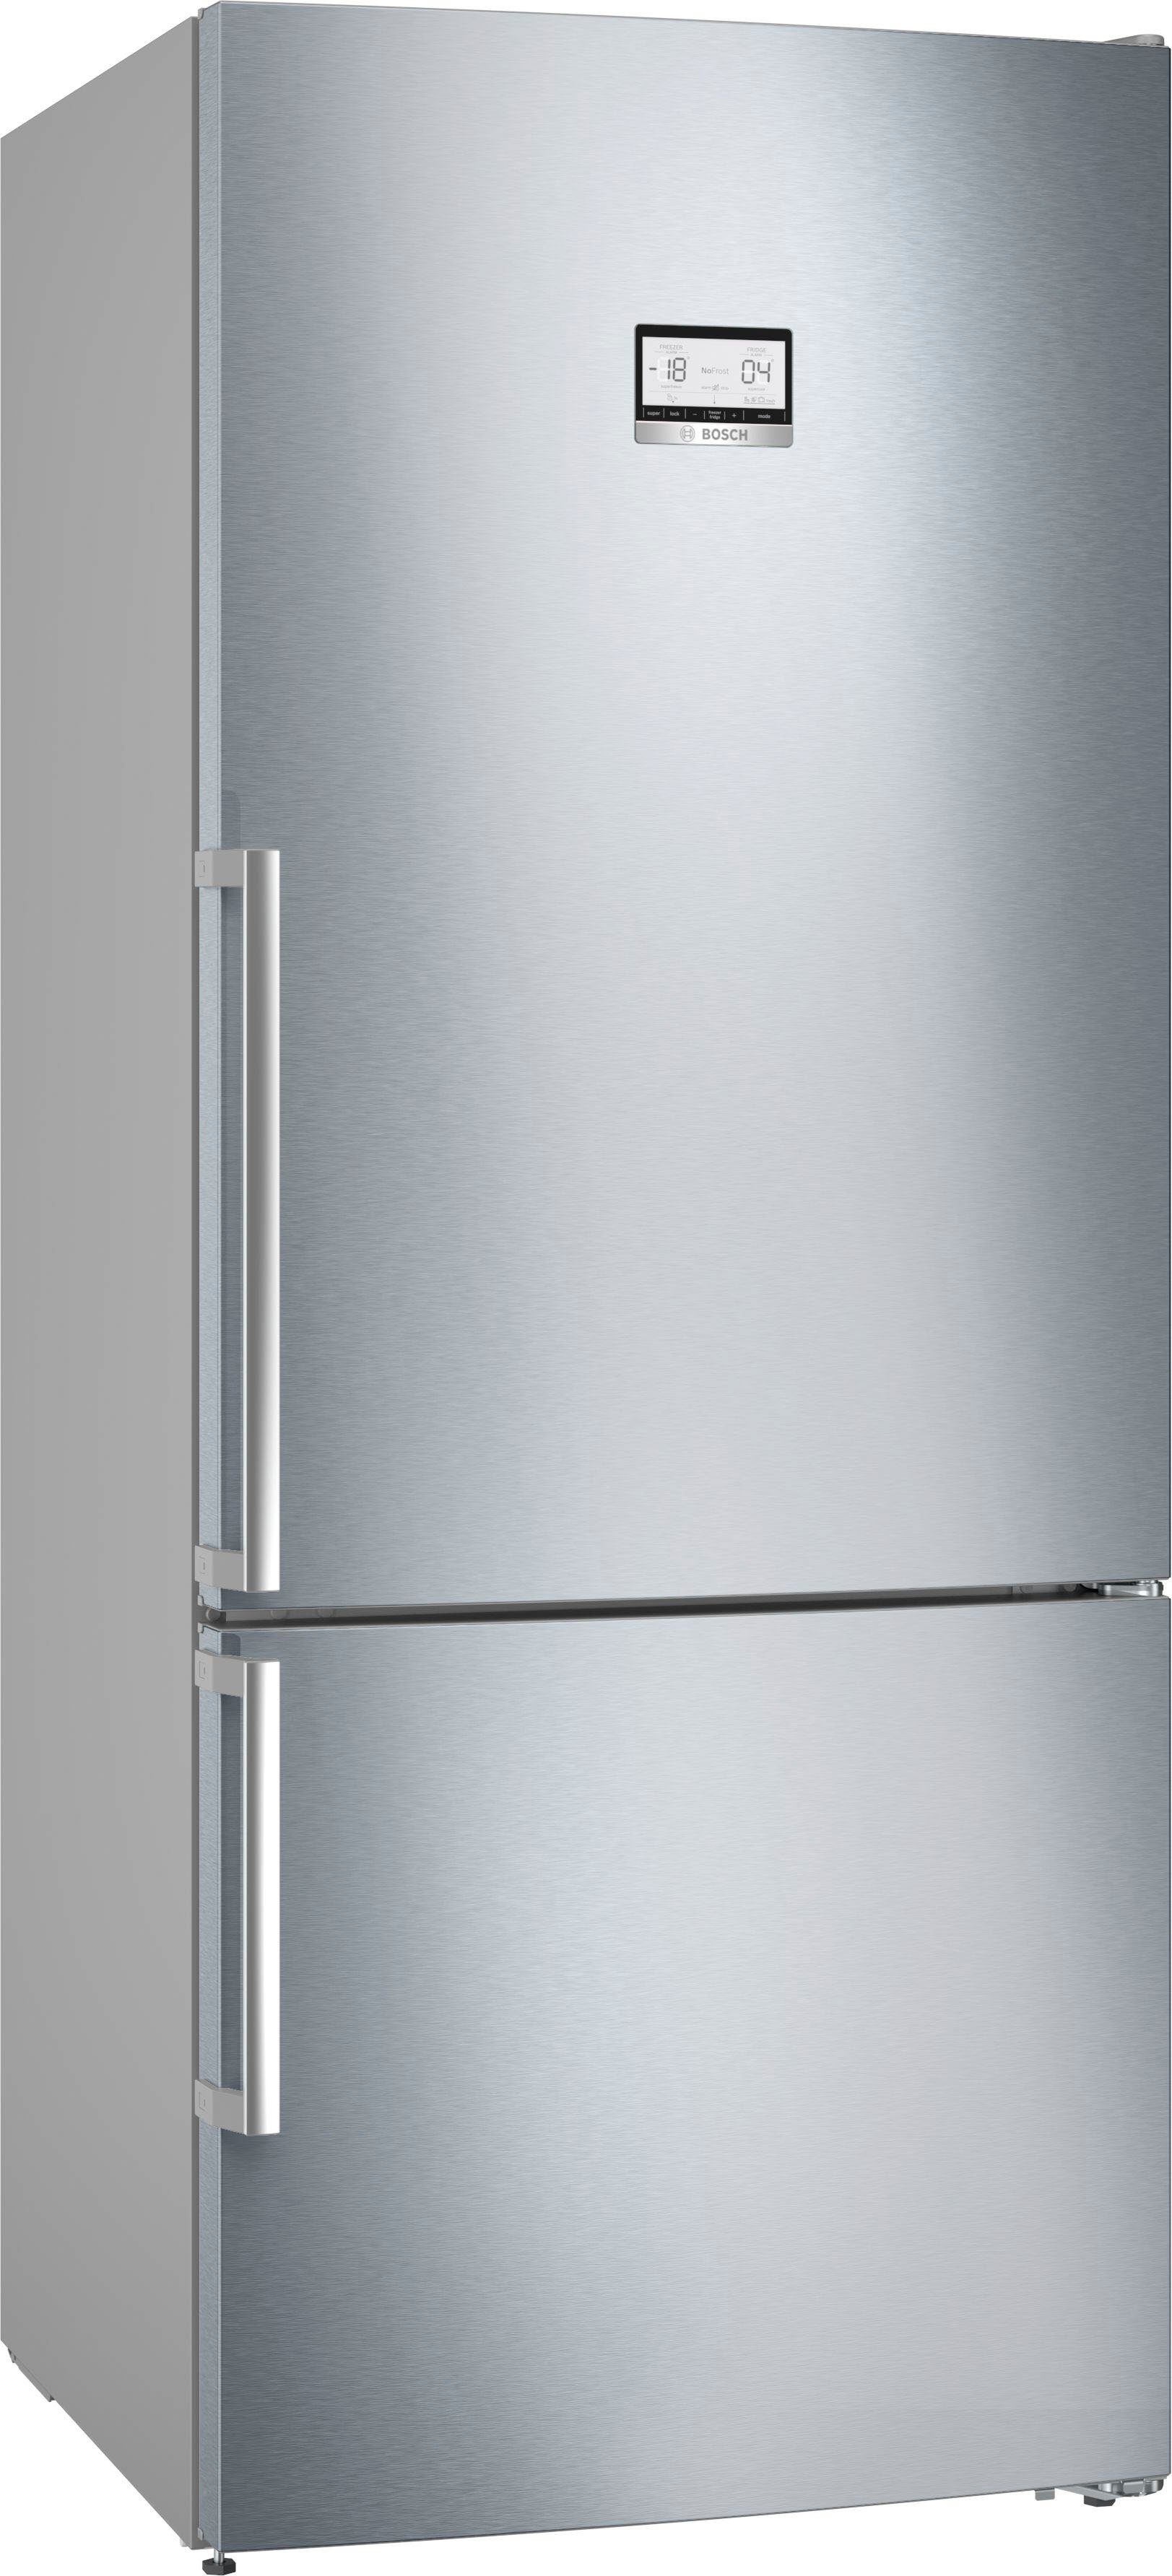 Getestete Bosch Kühlschränke online kaufen | OTTO